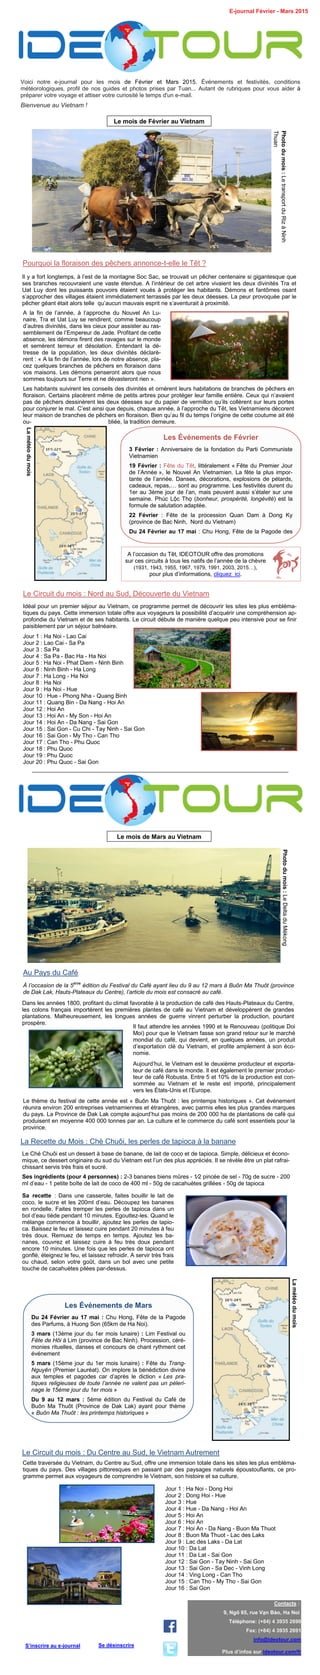 Voici notre e-journal pour les mois de Février et Mars 2015. Événements et festivités, conditions
météorologiques, profil de nos guides et photos prises par Tuan... Autant de rubriques pour vous aider à
préparer votre voyage et attiser votre curiosité le temps d'un e-mail.
Bienvenue au Vietnam !
E-journal Février - Mars 2015
Contacts :
9, Ngõ 65, rue Vạn Bảo, Ha Noi
Téléphone: (+84) 4 3935 2690
Fax: (+84) 4 3935 2691
info@ideotour.com
Plus d’infos sur ideotour.com/fr
Se désinscrireS’inscrire au e-journal
Le mois de Février au Vietnam
Photodumois:LetransportduRizàNinh
Thuan
Pourquoi la floraison des pêchers annonce-t-elle le Têt ?
Il y a fort longtemps, à l’est de la montagne Soc Sac, se trouvait un pêcher centenaire si gigantesque que
ses branches recouvraient une vaste étendue. A l’intérieur de cet arbre vivaient les deux divinités Tra et
Uat Luy dont les puissants pouvoirs étaient voués à protéger les habitants. Démons et fantômes osant
s’approcher des villages étaient immédiatement terrassés par les deux déesses. La peur provoquée par le
pêcher géant était alors telle qu’aucun mauvais esprit ne s’aventurait à proximité.
A la fin de l’année, à l’approche du Nouvel An Lu-
naire, Tra et Uat Luy se rendirent, comme beaucoup
d’autres divinités, dans les cieux pour assister au ras-
semblement de l’Empereur de Jade. Profitant de cette
absence, les démons firent des ravages sur le monde
et semèrent terreur et désolation. Entendant la dé-
tresse de la population, les deux divinités déclarè-
rent : « A la fin de l’année, lors de notre absence, pla-
cez quelques branches de pêchers en floraison dans
vos maisons. Les démons penseront alors que nous
sommes toujours sur Terre et ne dévasteront rien ».
Les habitants suivirent les conseils des divinités et ornèrent leurs habitations de branches de pêchers en
floraison. Certains placèrent même de petits arbres pour protéger leur famille entière. Ceux qui n’avaient
pas de pêchers dessinèrent les deux déesses sur du papier de vermillon qu’ils collèrent sur leurs portes
pour conjurer le mal. C’est ainsi que depuis, chaque année, à l’approche du Têt, les Vietnamiens décorent
leur maison de branches de pêchers en floraison. Bien qu’au fil du temps l’origine de cette coutume ait été
ou- bliée, la tradition demeure.
Les Événements de Février
3 Février : Anniversaire de la fondation du Parti Communiste
Vietnamien
19 Février : Fête du Têt, littéralement « Fête du Premier Jour
de l’Année », le Nouvel An Vietnamien. La fête la plus impor-
tante de l’année. Danses, décorations, explosions de pétards,
cadeaux, repas,… sont au programme. Les festivités durent du
1er au 3ème jour de l’an, mais peuvent aussi s’étaler sur une
semaine. Phúc Lộc Thọ (bonheur, prospérité, longévité) est la
formule de salutation adaptée.
22 Février : Fête de la procession Quan Dam à Dong Ky
(province de Bac Ninh, Nord du Vietnam)
Du 24 Février au 17 mai : Chu Hong, Fête de la Pagode des
Lamétéodumois
Le Circuit du mois : Nord au Sud, Découverte du Vietnam
Idéal pour un premier séjour au Vietnam, ce programme permet de découvrir les sites les plus embléma-
tiques du pays. Cette immersion totale offre aux voyageurs la possibilité d’acquérir une compréhension ap-
profondie du Vietnam et de ses habitants. Le circuit débute de manière quelque peu intensive pour se finir
paisiblement par un séjour balnéaire.
Jour 1 : Ha Noi - Lao Cai
Jour 2 : Lao Cai - Sa Pa
Jour 3 : Sa Pa
Jour 4 : Sa Pa - Bac Ha - Ha Noi
Jour 5 : Ha Noi - Phat Diem - Ninh Binh
Jour 6 : Ninh Binh - Ha Long
Jour 7 : Ha Long - Ha Noi
Jour 8 : Ha Noi
Jour 9 : Ha Noi - Hue
Jour 10 : Hue - Phong Nha - Quang Binh
Jour 11 : Quang Bin - Da Nang - Hoi An
Jour 12 : Hoi An
Jour 13 : Hoi An - My Son - Hoi An
Jour 14 : Hoi An - Da Nang - Sai Gon
Jour 15 : Sai Gon - Cu Chi - Tay Ninh - Sai Gon
Jour 16 : Sai Gon - My Tho - Can Tho
Jour 17 : Can Tho - Phu Quoc
Jour 18 : Phu Quoc
Jour 19 : Phu Quoc
Jour 20 : Phu Quoc - Sai Gon
Le mois de Mars au Vietnam
Photodumois:LeDeltaduMékong
Au Pays du Café
À l’occasion de la 5ème
édition du Festival du Café ayant lieu du 9 au 12 mars à Buôn Ma Thuôt (province
de Dak Lak, Hauts-Plateaux du Centre), l’article du mois est consacré au café.
Dans les années 1800, profitant du climat favorable à la production de café des Hauts-Plateaux du Centre,
les colons français importèrent les premières plantes de café au Vietnam et développèrent de grandes
plantations. Malheureusement, les longues années de guerre vinrent perturber la production, pourtant
prospère.
Il faut attendre les années 1990 et le Renouveau (politique Doi
Moi) pour que le Vietnam fasse son grand retour sur le marché
mondial du café, qui devient, en quelques années, un produit
d’exportation clé du Vietnam, et profite amplement à son éco-
nomie.
Aujourd’hui, le Vietnam est le deuxième producteur et exporta-
teur de café dans le monde. Il est également le premier produc-
teur de café Robusta. Entre 5 et 10% de la production est con-
sommée au Vietnam et le reste est importé, principalement
vers les États-Unis et l’Europe.
Le thème du festival de cette année est « Buôn Ma Thuôt : les printemps historiques ». Cet événement
réunira environ 200 entreprises vietnamiennes et étrangères, avec parmis elles les plus grandes marques
du pays. La Province de Dak Lak compte aujourd’hui pas moins de 200 000 ha de plantations de café qui
produisent en moyenne 400 000 tonnes par an. La culture et le commerce du café sont essentiels pour la
province.
Les Événements de Mars
Du 24 Février au 17 mai : Chu Hong, Fête de la Pagode
des Parfums, à Huong Son (65km de Ha Noi).
3 mars (13ème jour du 1er mois lunaire) : Lim Festival ou
Fête de Hôi à Lim (province de Bac Ninh). Procession, céré-
monies rituelles, danses et concours de chant rythment cet
événement
5 mars (15ème jour du 1er mois lunaire) : Fête du Trang-
Nguyên (Premier Lauréat). On implore la bénédiction divine
aux temples et pagodes car d’après le diction « Les pra-
tiques religieuses de toute l’année ne valent pas un pèleri-
nage le 15ème jour du 1er mois »
Du 9 au 12 mars : 5ème édition du Festival du Café de
Buôn Ma Thuôt (Province de Dak Lak) ayant pour thème
« Buôn Ma Thuôt : les printemps historiques »
Lamétéodumois
Le Circuit du mois : Du Centre au Sud, le Vietnam Autrement
Jour 1 : Ha Noi - Dong Hoi
Jour 2 : Dong Hoi - Hue
Jour 3 : Hue
Jour 4 : Hue - Da Nang - Hoi An
Jour 5 : Hoi An
Jour 6 : Hoi An
Jour 7 : Hoi An - Da Nang - Buon Ma Thuot
Jour 8 : Buon Ma Thuot - Lac des Laks
Jour 9 : Lac des Laks - Da Lat
Jour 10 : Da Lat
Jour 11 : Da Lat - Sai Gon
Jour 12 : Sai Gon - Tay Ninh - Sai Gon
Jour 13 : Sai Gon - Sa Dec - Vinh Long
Jour 14 : Ving Long - Can Tho
Jour 15 : Can Tho - My Tho - Sai Gon
Jour 16 : Sai Gon
Cette traversée du Vietnam, du Centre au Sud, offre une immersion totale dans les sites les plus embléma-
tiques du pays. Des villages pittoresques en passant par des paysages naturels époustouflants, ce pro-
gramme permet aux voyageurs de comprendre le Vietnam, son histoire et sa culture.
La Recette du Mois : Chè Chuôi, les perles de tapioca à la banane
Le Ché Chuôi est un dessert à base de banane, de lait de coco et de tapioca. Simple, délicieux et écono-
mique, ce dessert originaire du sud du Vietnam est l’un des plus appréciés. Il se révèle être un plat rafrai-
chissant servis très frais et sucré.
Ses ingrédients (pour 4 personnes) : 2-3 bananes biens mûres - 1⁄2 pincée de sel - 70g de sucre - 200
ml d’eau - 1 petite boîte de lait de coco de 400 ml - 50g de cacahuètes grillées - 50g de tapioca
Sa recette : Dans une casserole, faites bouillir le lait de
coco, le sucre et les 200ml d’eau. Découpez les bananes
en rondelle. Faites tremper les perles de tapioca dans un
bol d’eau tiède pendant 10 minutes. Egouttez-les. Quand le
mélange commence à bouillir, ajoutez les perles de tapio-
ca. Baissez le feu et laissez cuire pendant 20 minutes à feu
très doux. Remuez de temps en temps. Ajoutez les ba-
nanes, couvrez et laissez cuire à feu très doux pendant
encore 10 minutes. Une fois que les perles de tapioca ont
gonflé, éteignez le feu, et laissez refroidir. A servir très frais
ou chaud, selon votre goût, dans un bol avec une petite
touche de cacahuètes pilées par-dessus.
A l’occasion du Têt, IDEOTOUR offre des promotions
sur ces circuits à tous les natifs de l’année de la chèvre
(1931, 1943, 1955, 1967, 1979, 1991, 2003, 2015…),
pour plus d’informations, cliquez ici.
 